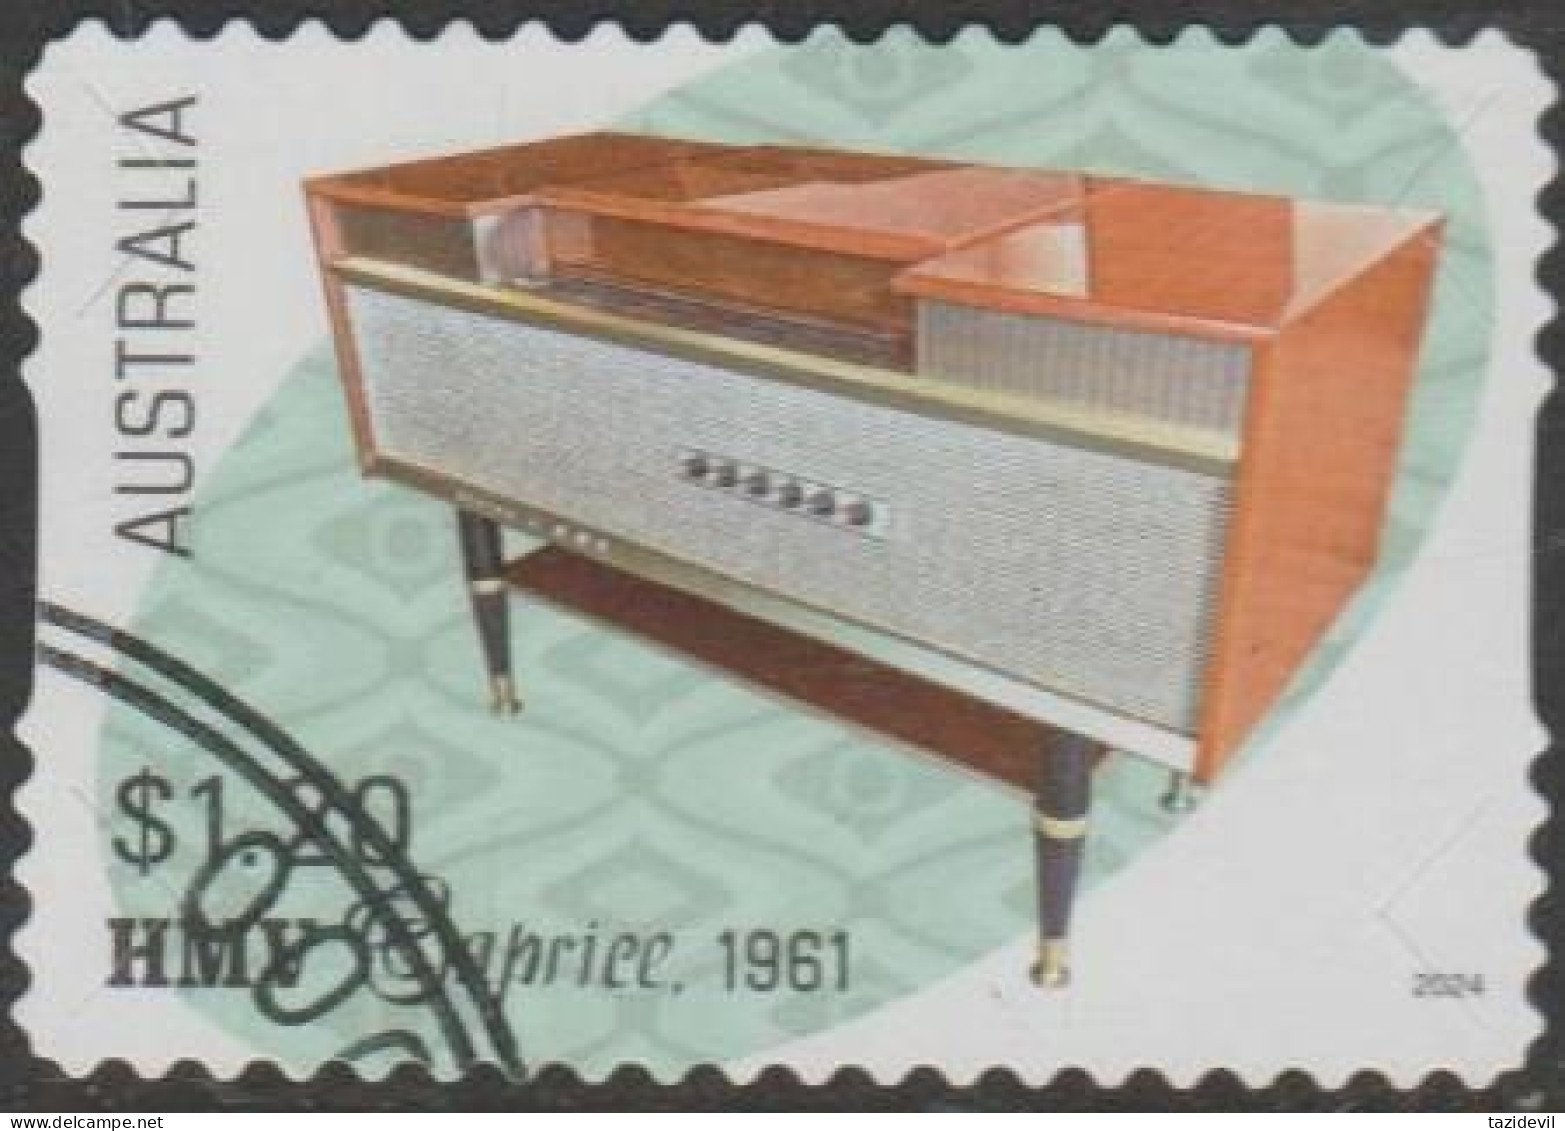 AUSTRALIA - DIE-CUT-USED 2024 $1.20 Retro Audio - HMV Caprice 1961 - Used Stamps